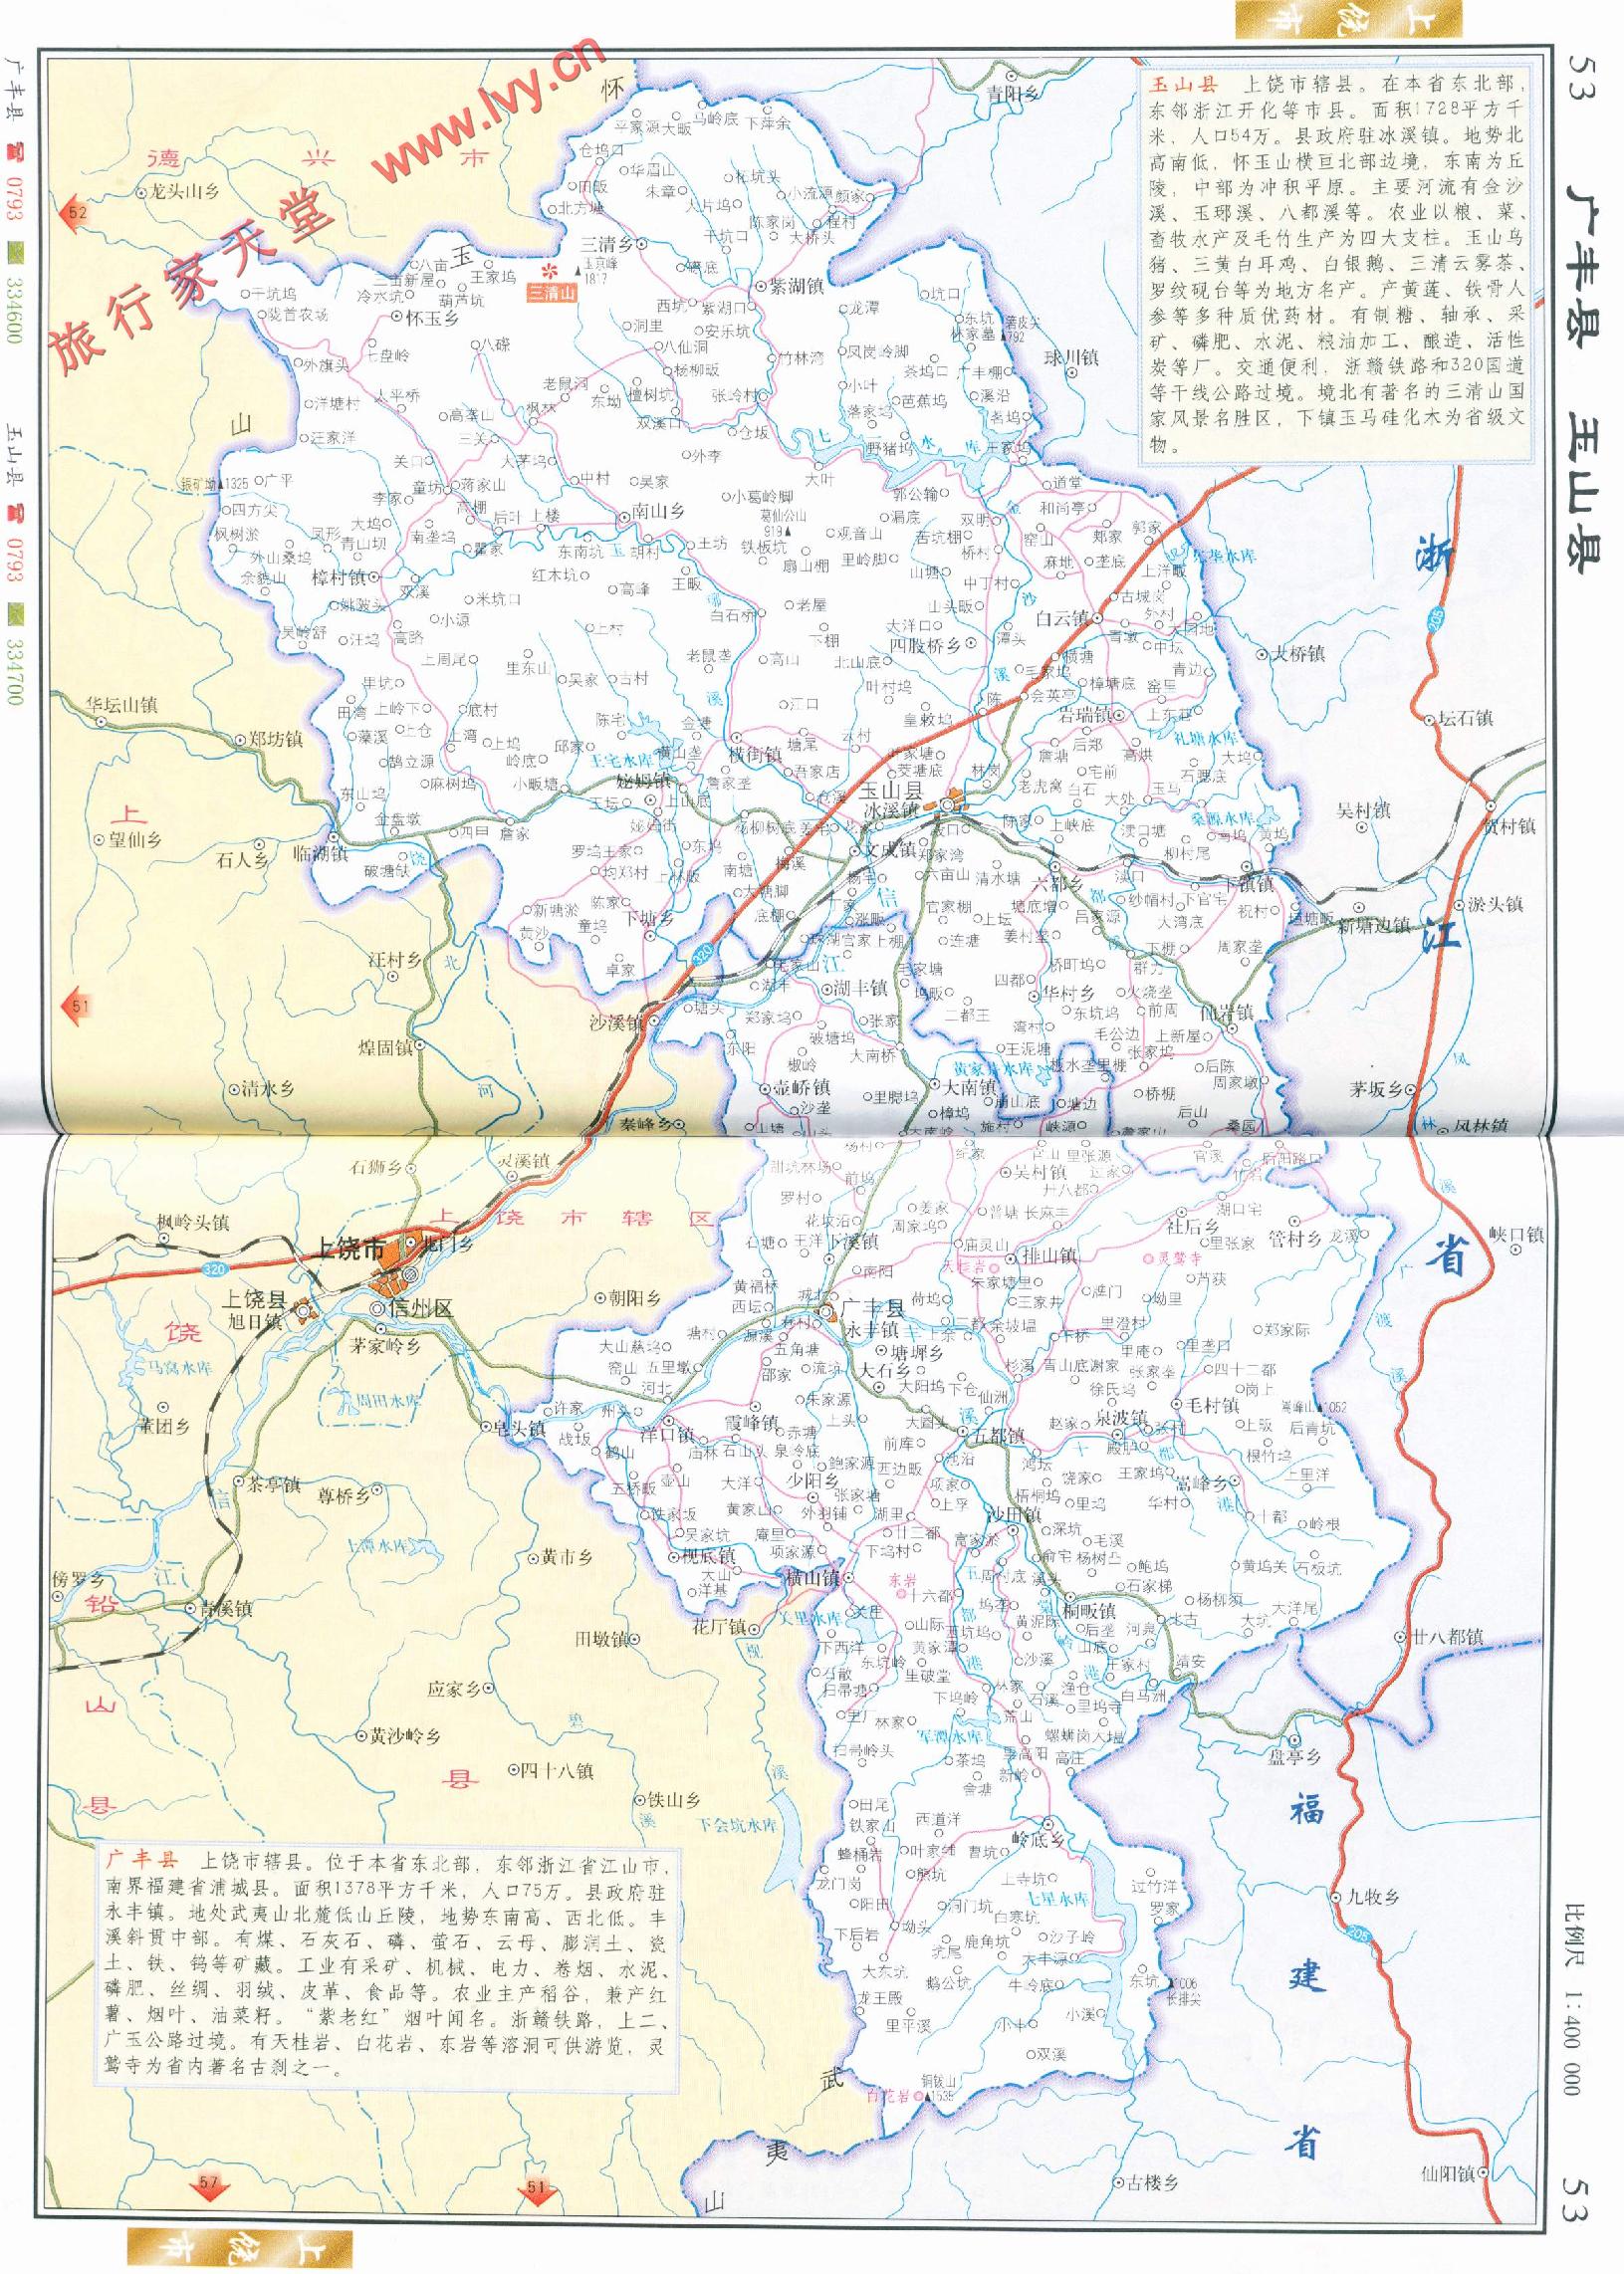 阜城地图高清版大地图(点击查看大图) 阜城县是河北省衡水